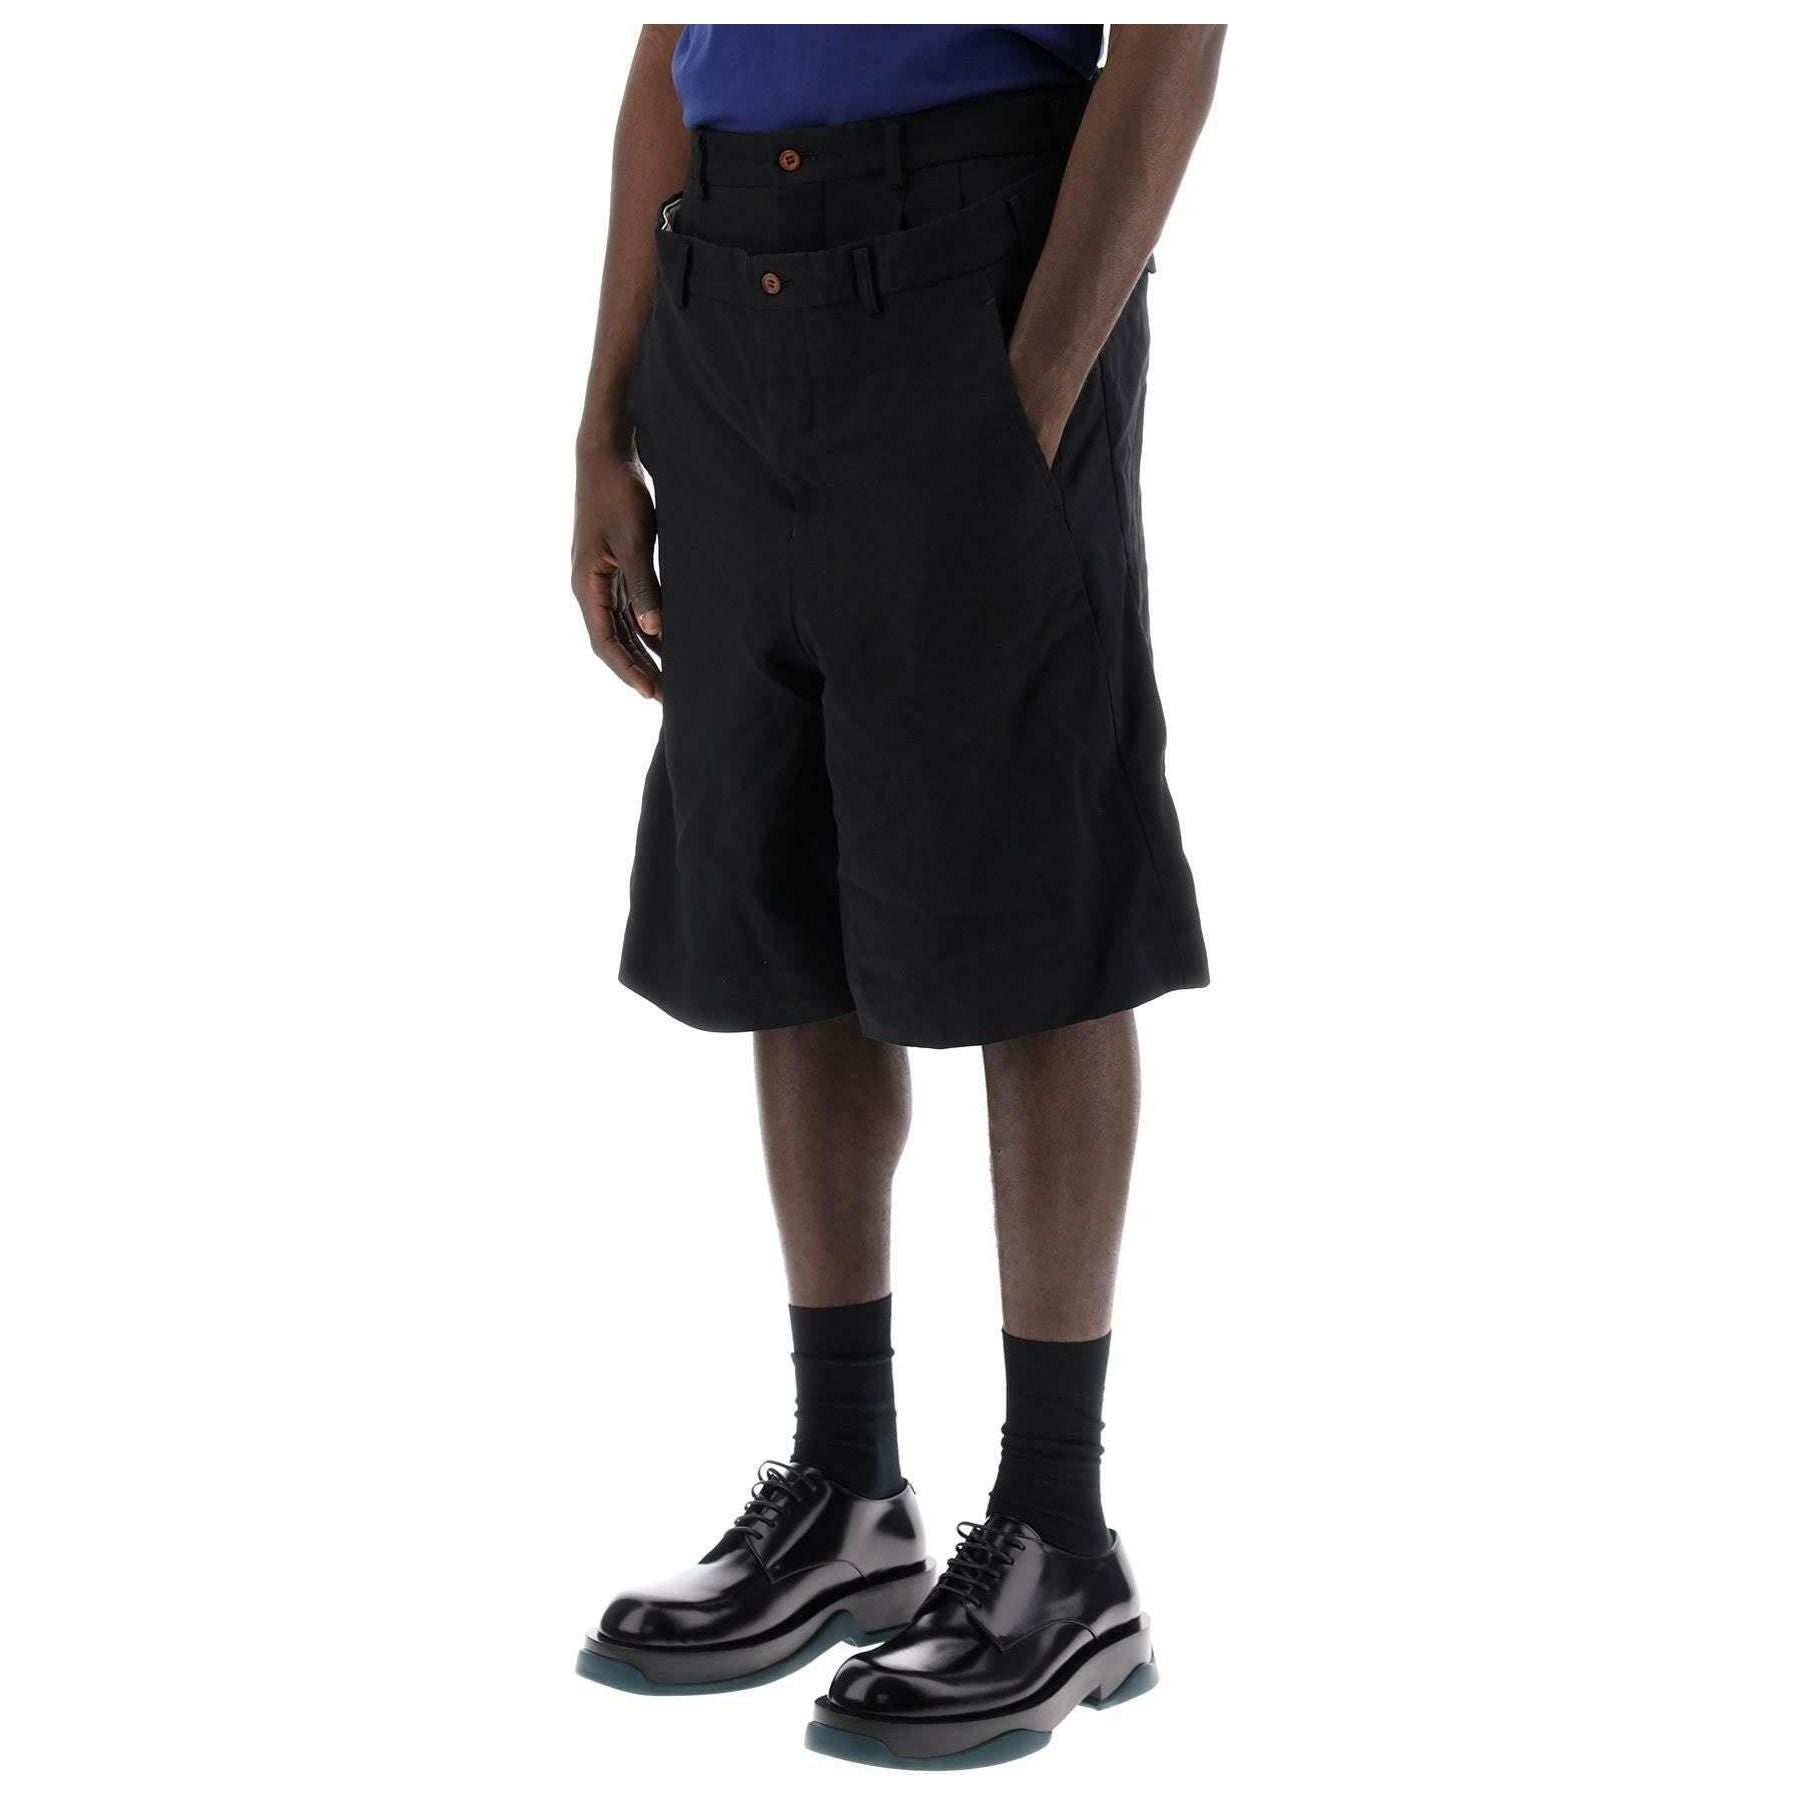 Garçons Plus Black Layered Twill Shorts COMME DES GARCONS HOMME PLUS JOHN JULIA.